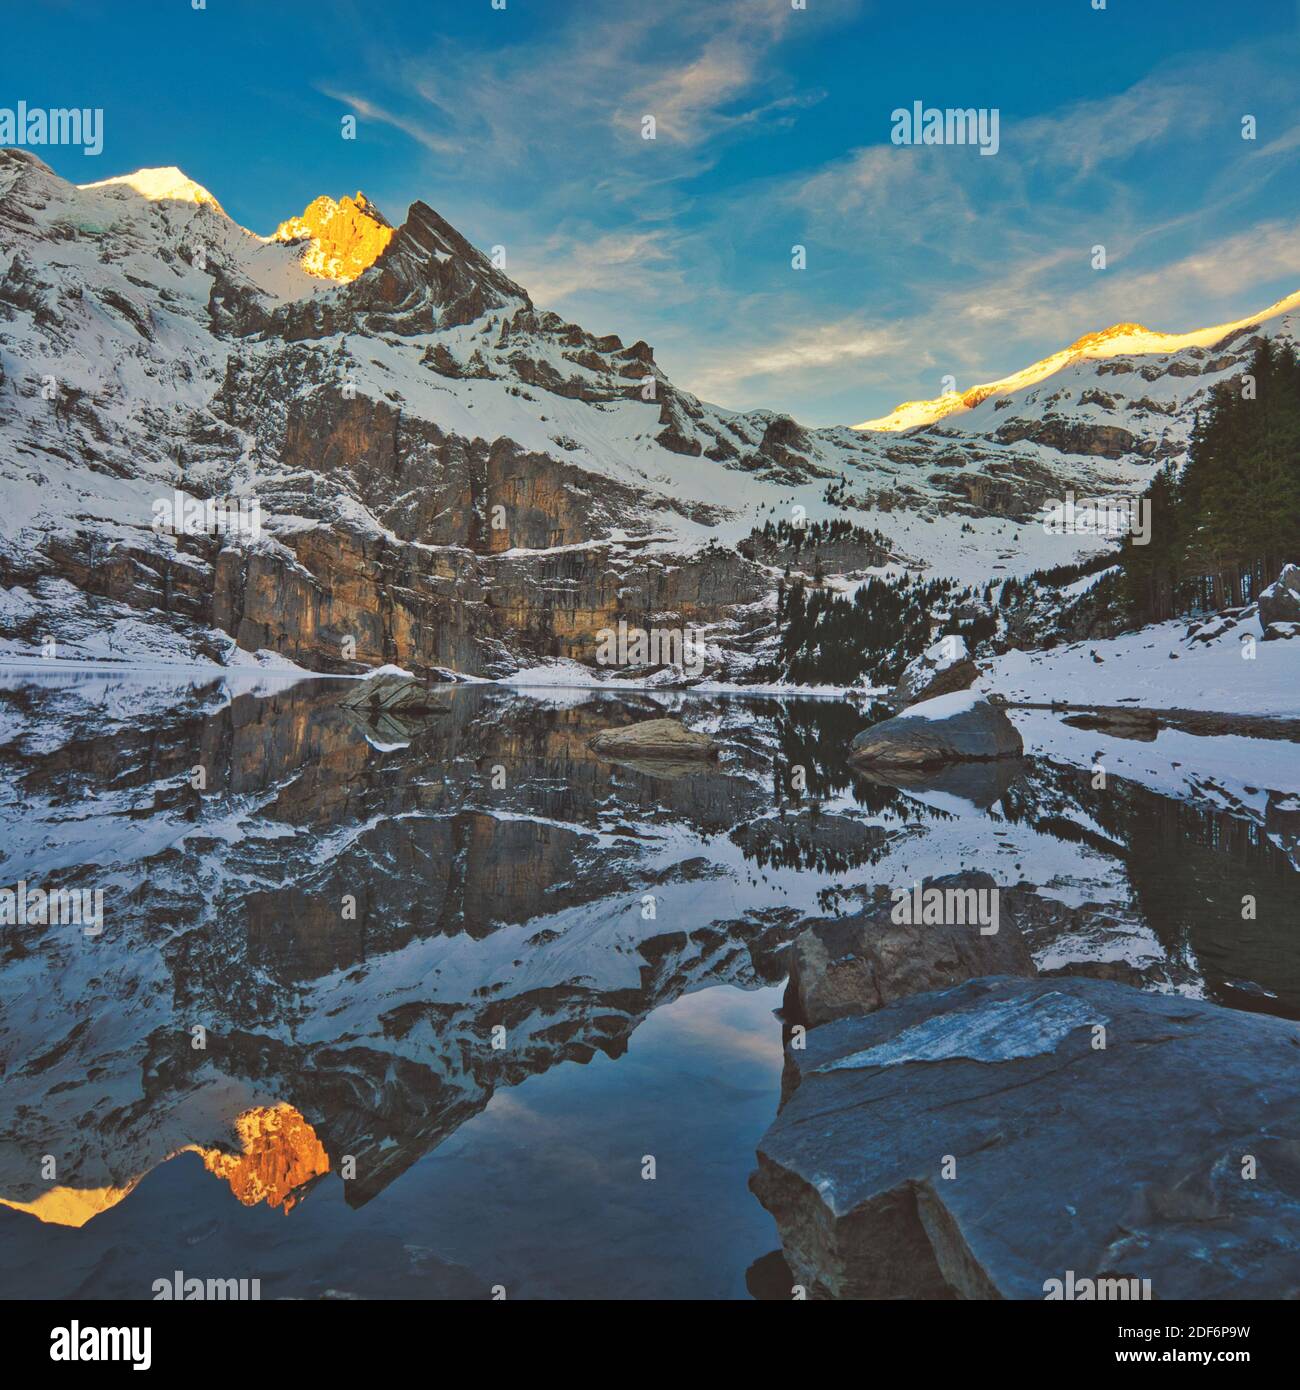 Paysage pittoresque de la Suisse avec neige, montagne et lac en hiver. Visites à Kandersteg. Reflet de la montagne et du ciel sur l'eau du lac. Banque D'Images